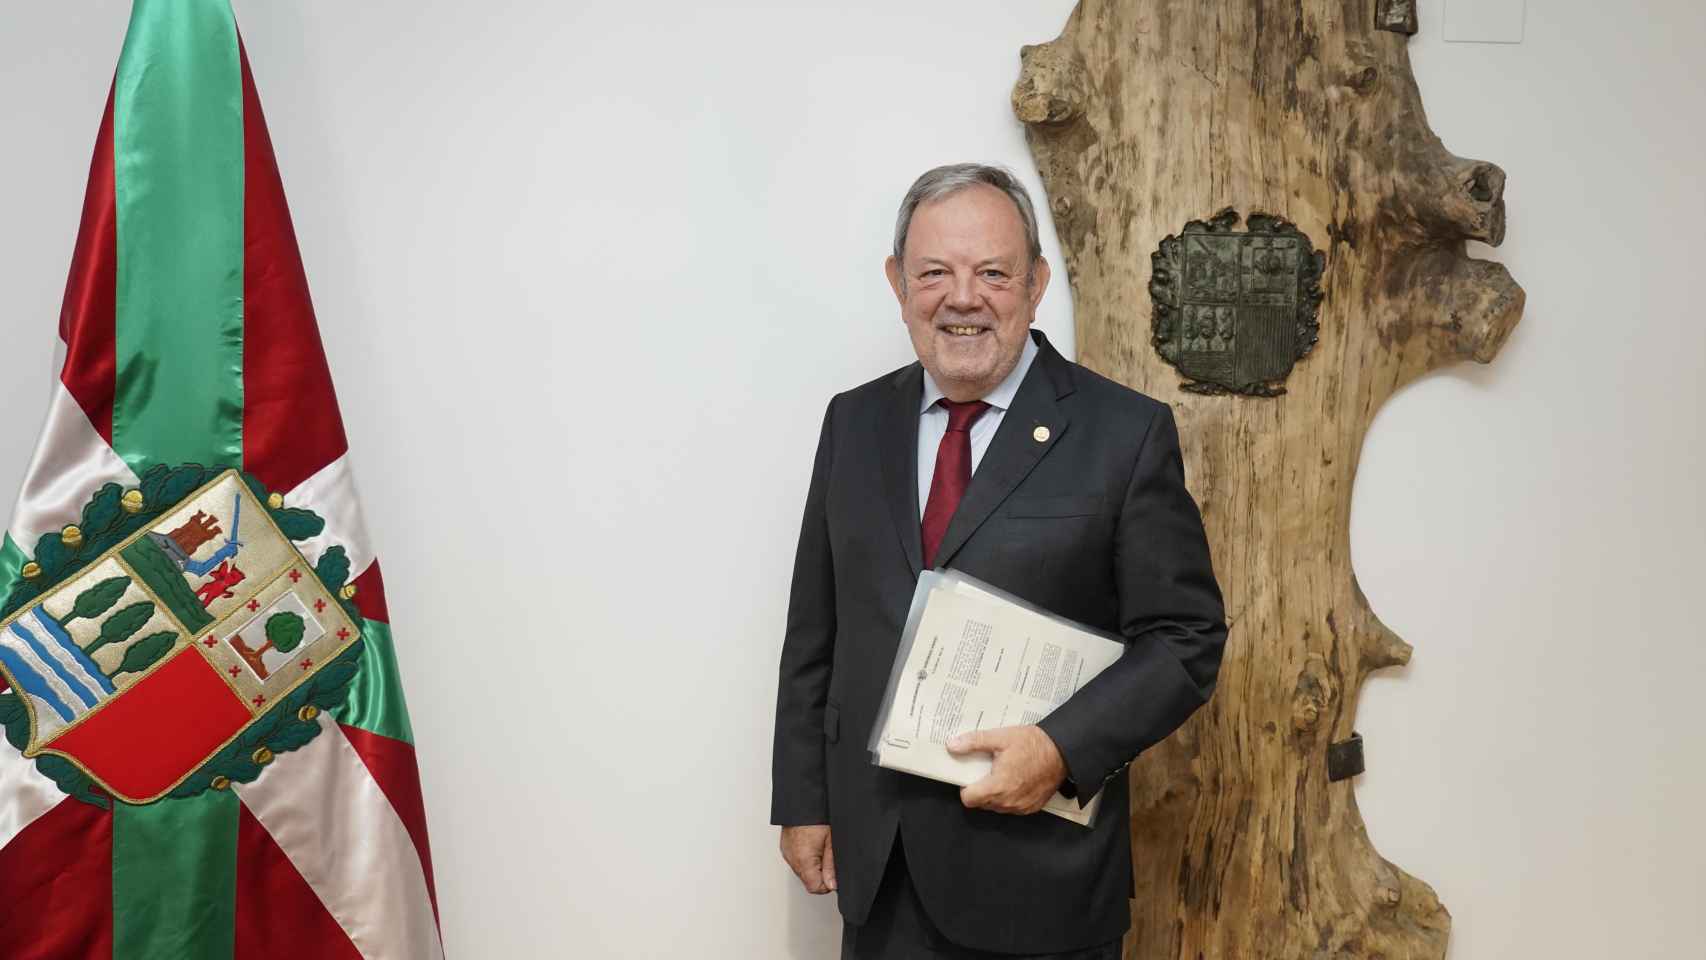 El consejero de Economía y Hacienda del Gobierno vasco confía en la evolución positiva de la economía en Euskadi.